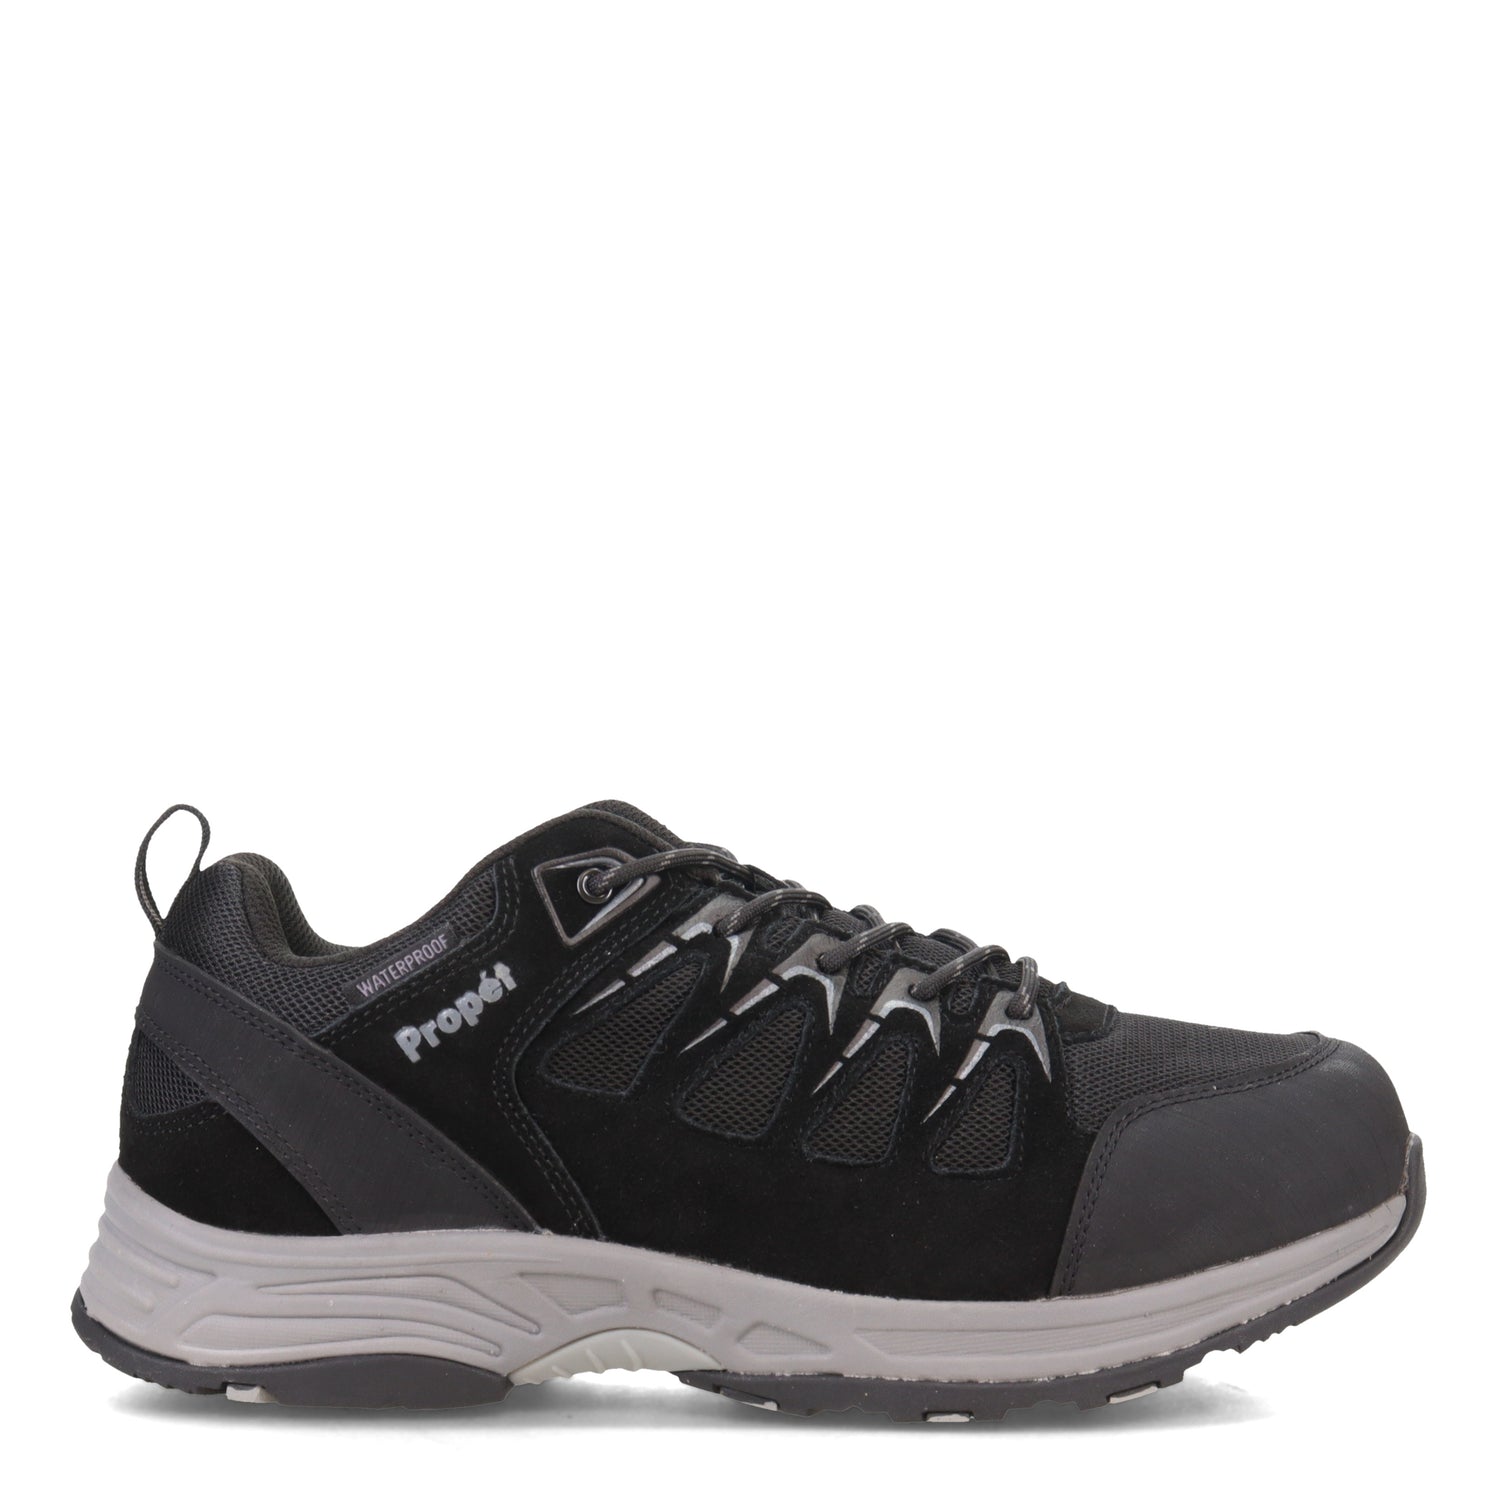 Peltz Shoes  Men's Propet Cooper Hiking Shoe Black MOA062M-BLK